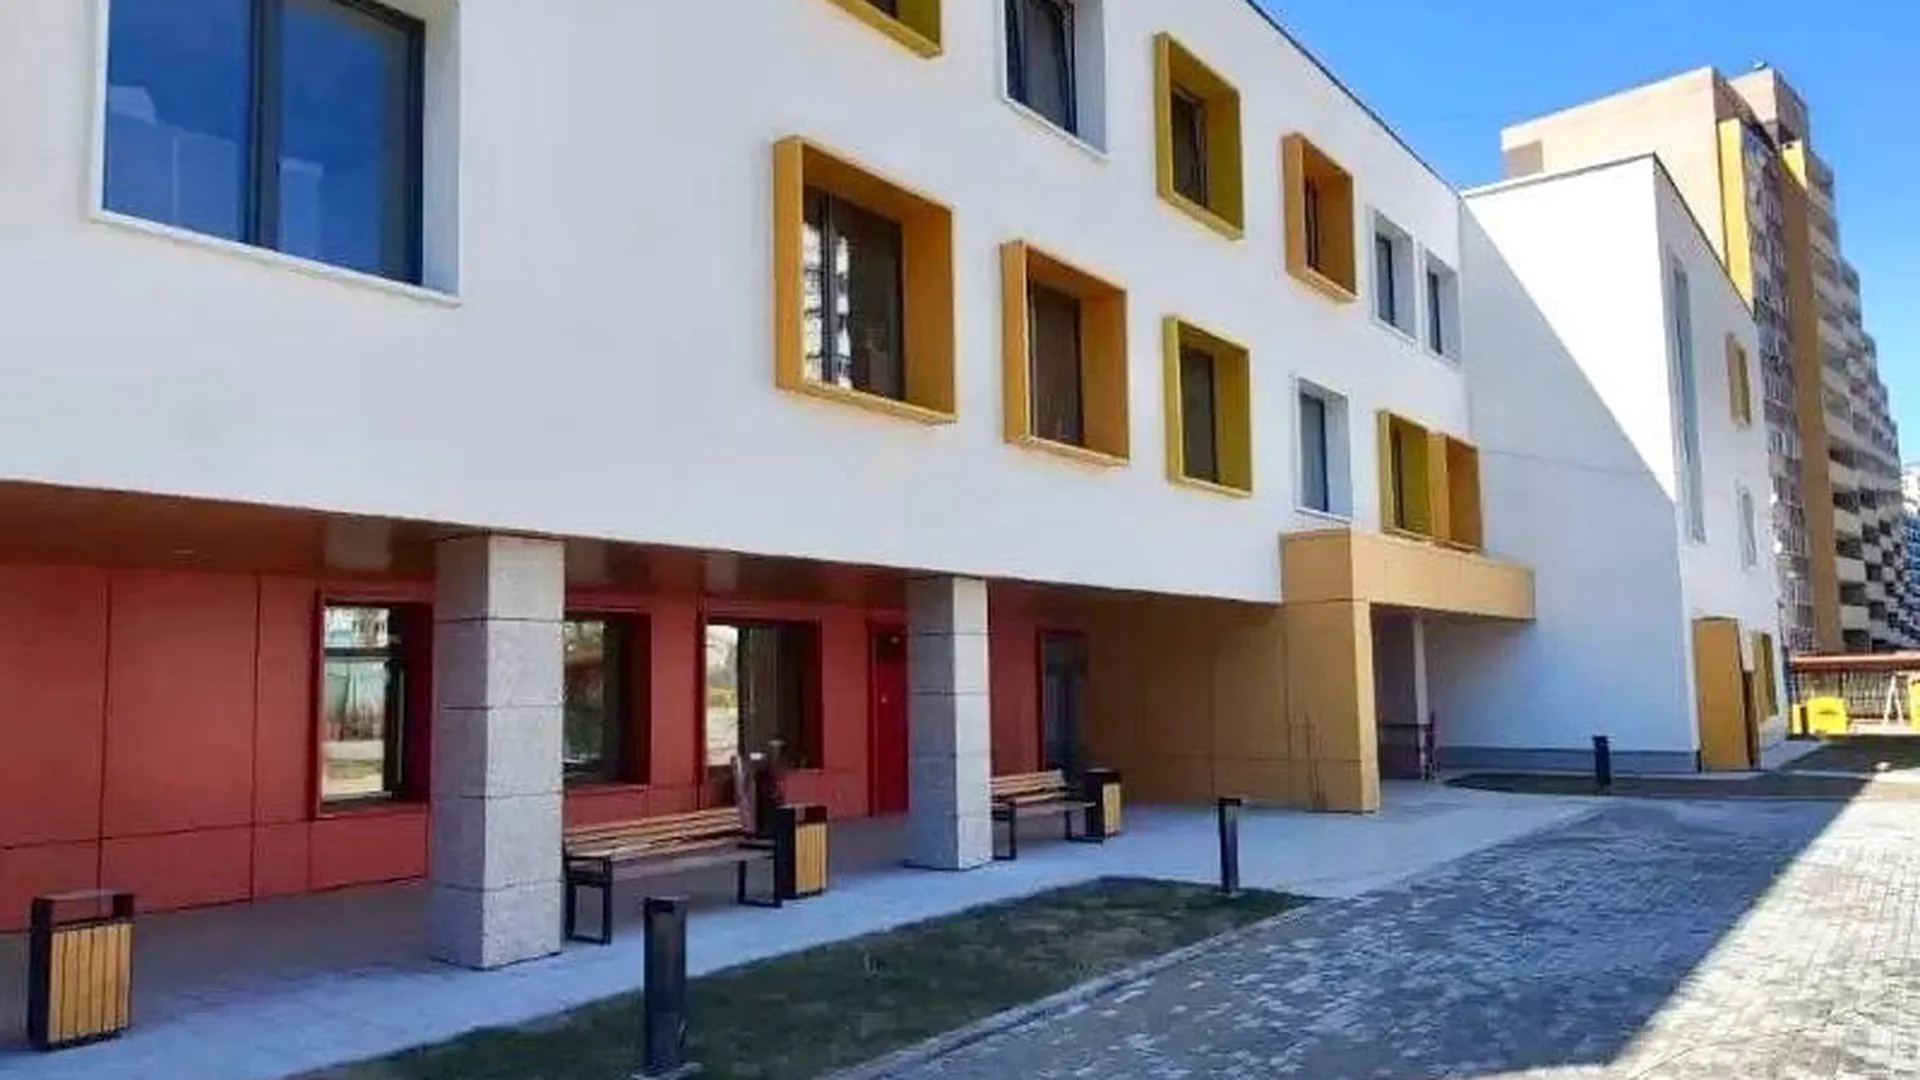 Новый детский сад в Мытищах готовится открыть свои двери для первых воспитанников